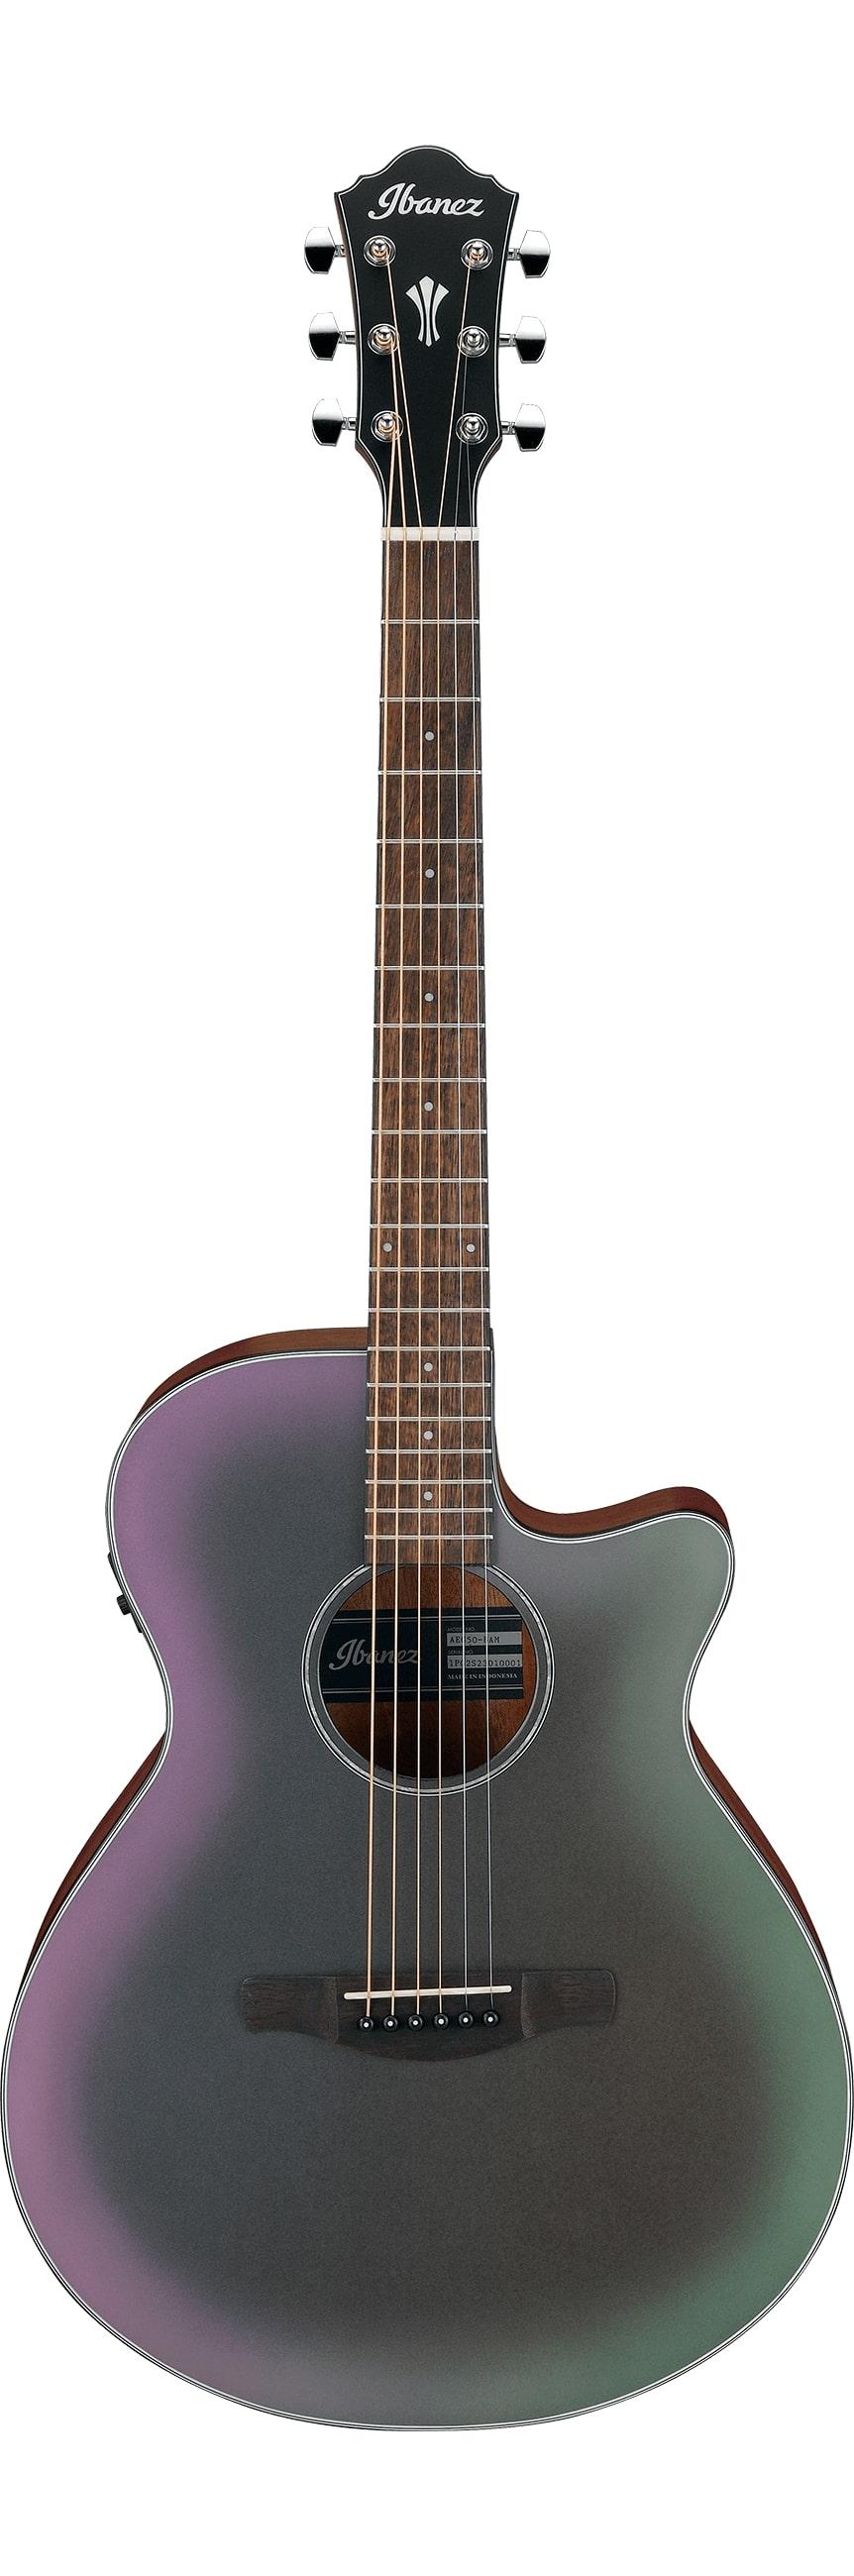 Электроакустические гитары Ibanez AEG50-BAM процессоры эффектов и педали для гитары ibanez tsmini tube screamer mini